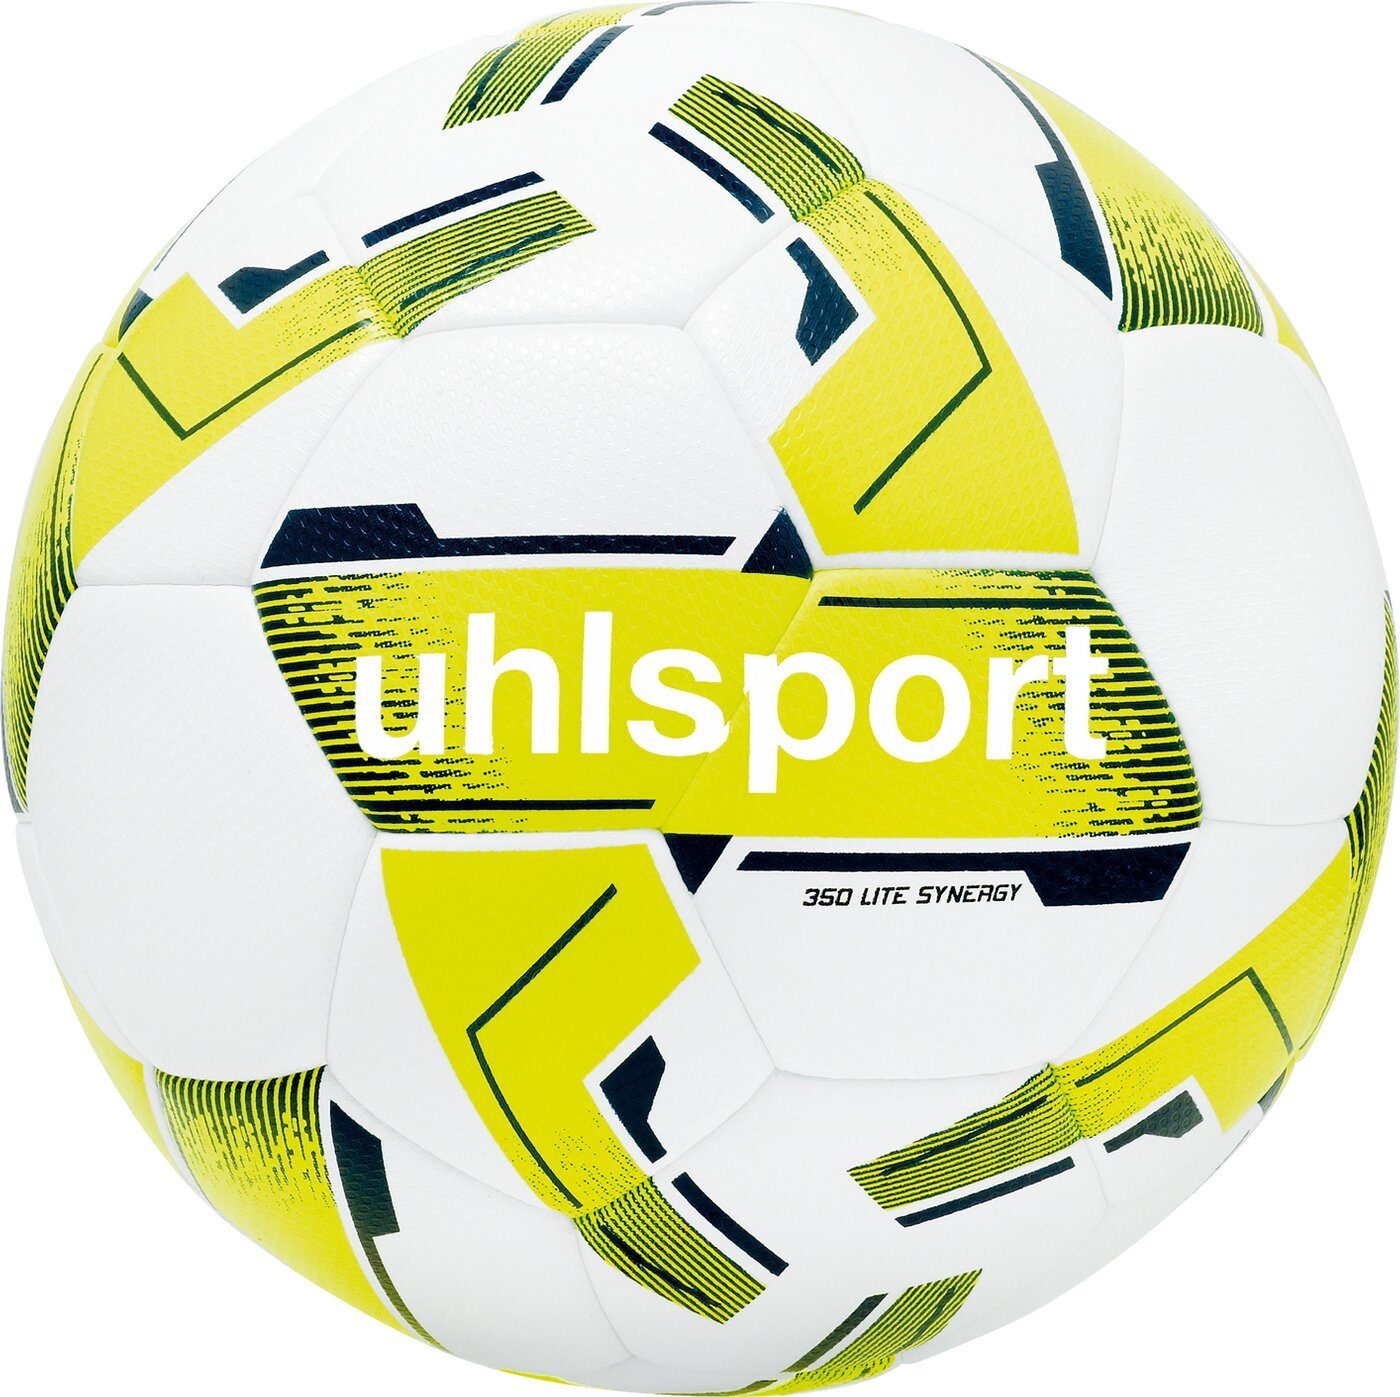 LITE 350 uhlsport SYNERGY Fußball